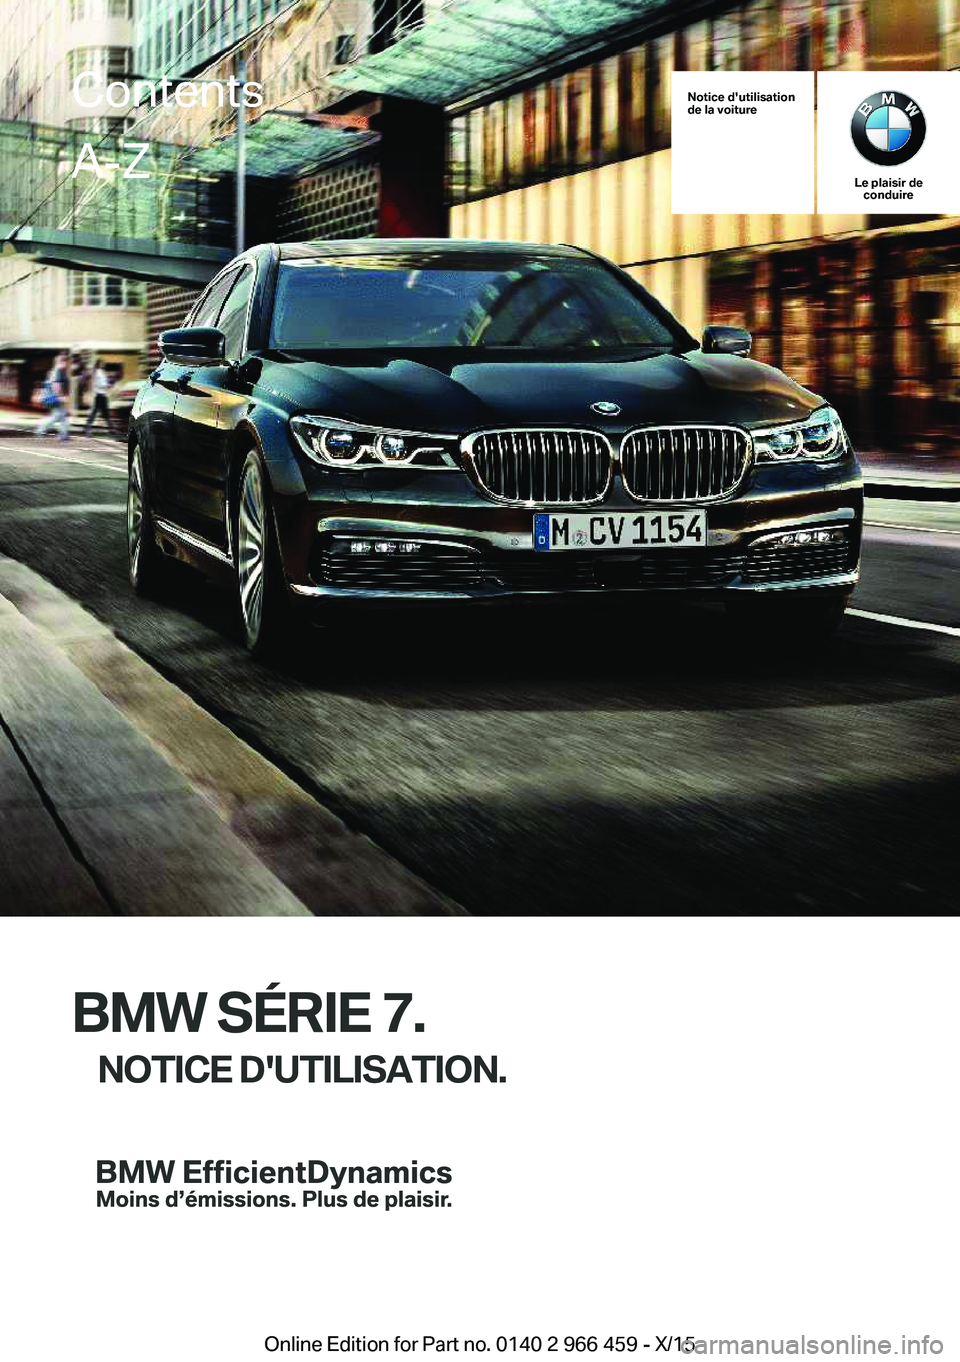 BMW 7 SERIES 2016  Notices Demploi (in French) Notice d'utilisation
de la voiture
Le plaisir de conduire
BMW SÉRIE 7.
NOTICE D'UTILISATION.
ContentsA-Z
Online Edition for Part no. 0140 2 966 459 - X/15   